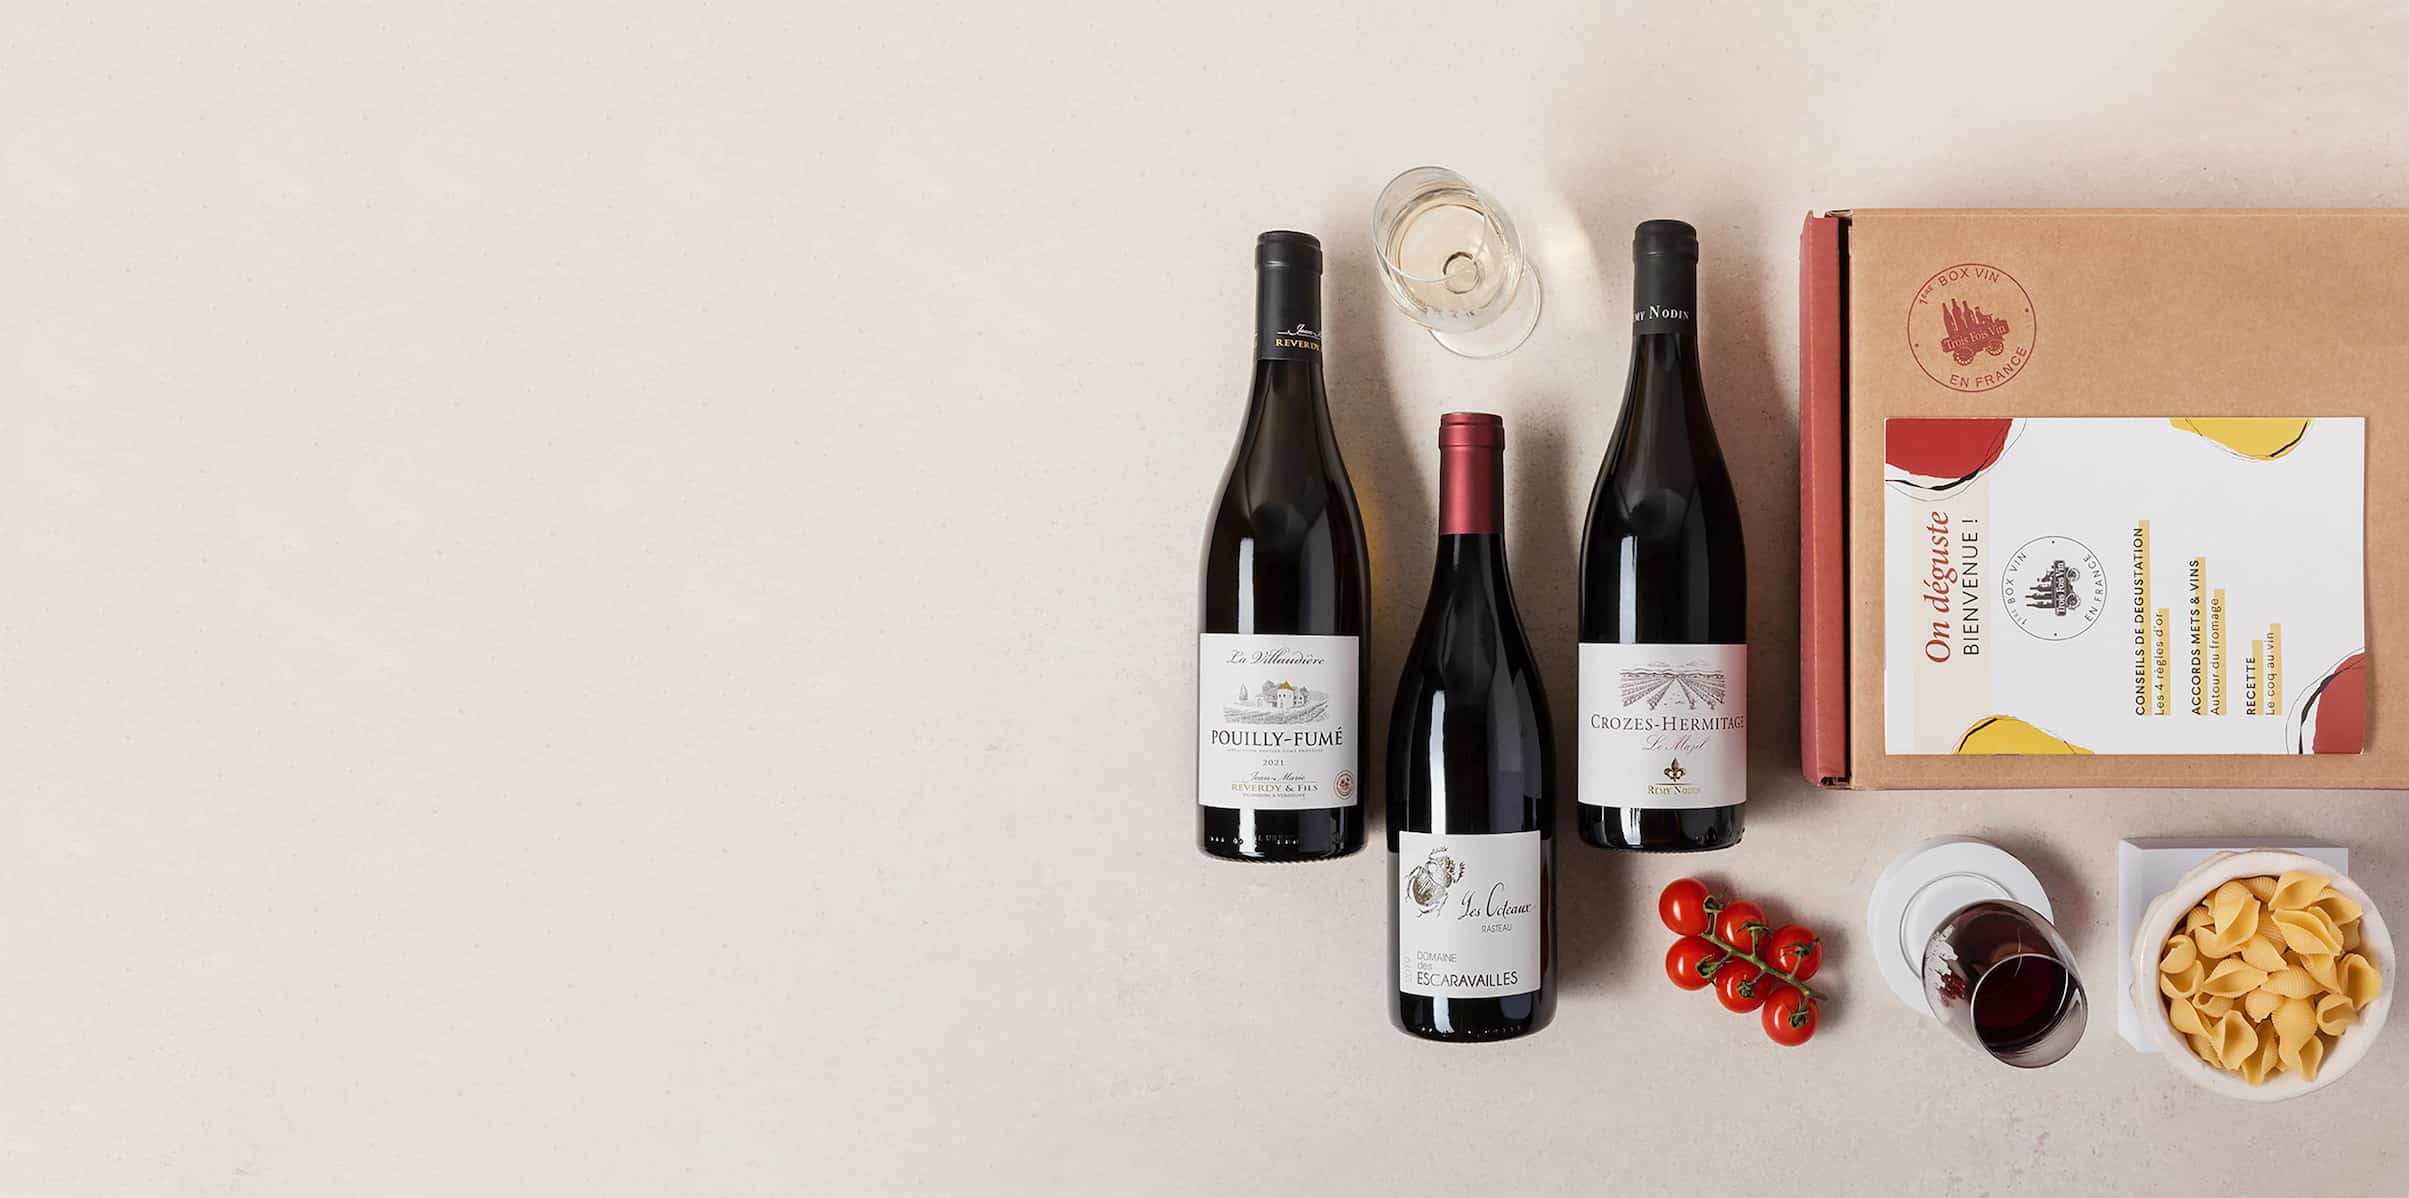 Coffret Cadeau Vin Femme - Vins du Languedoc - A offrir pour Noël !